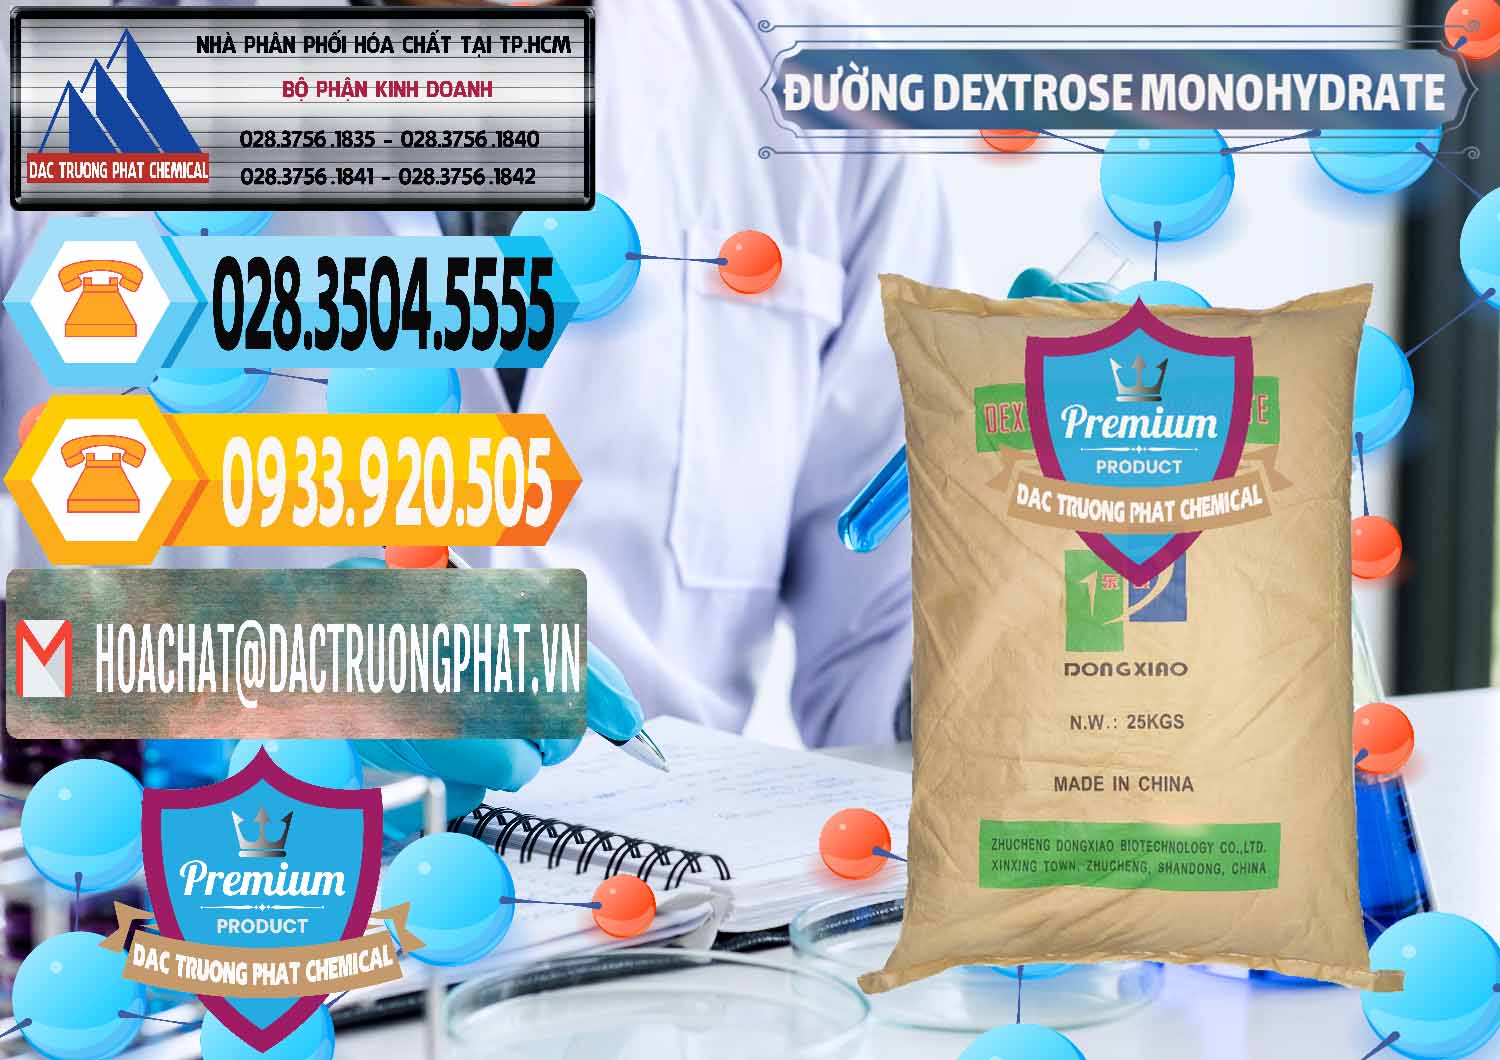 Chuyên bán - phân phối Đường Dextrose Monohydrate Food Grade Dongxiao Trung Quốc China - 0063 - Cung cấp ( bán ) hóa chất tại TP.HCM - hoachattayrua.net